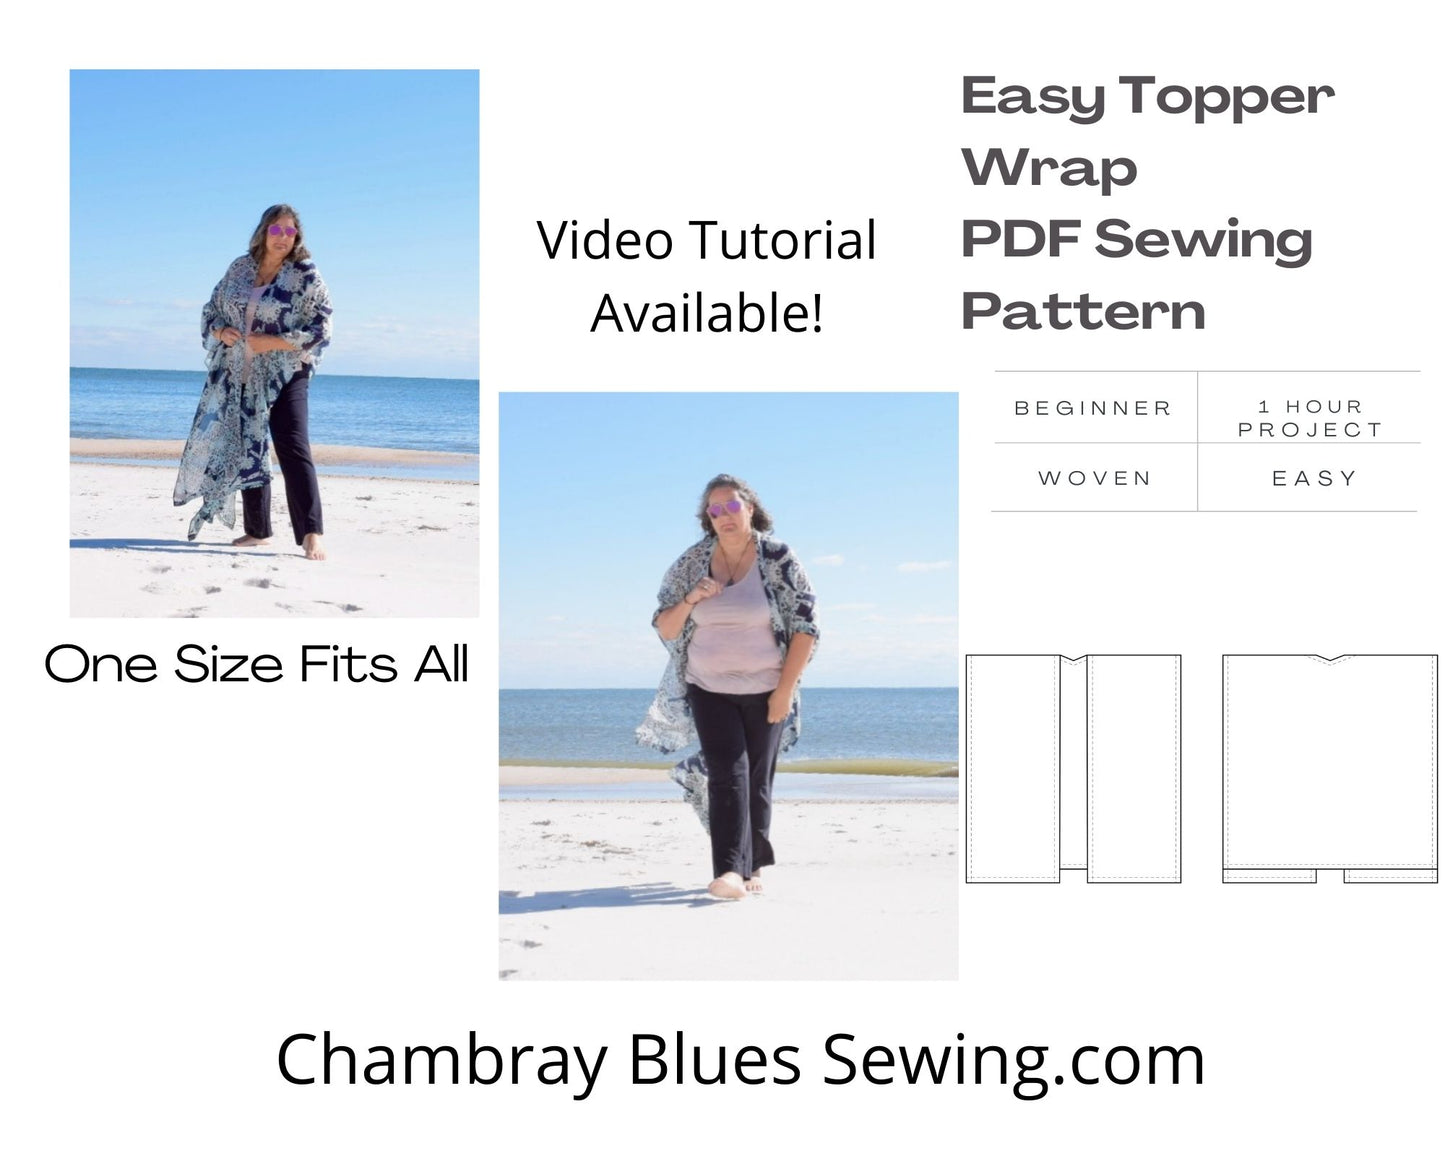 Easy Topper Wrap PDF Sewing Pattern